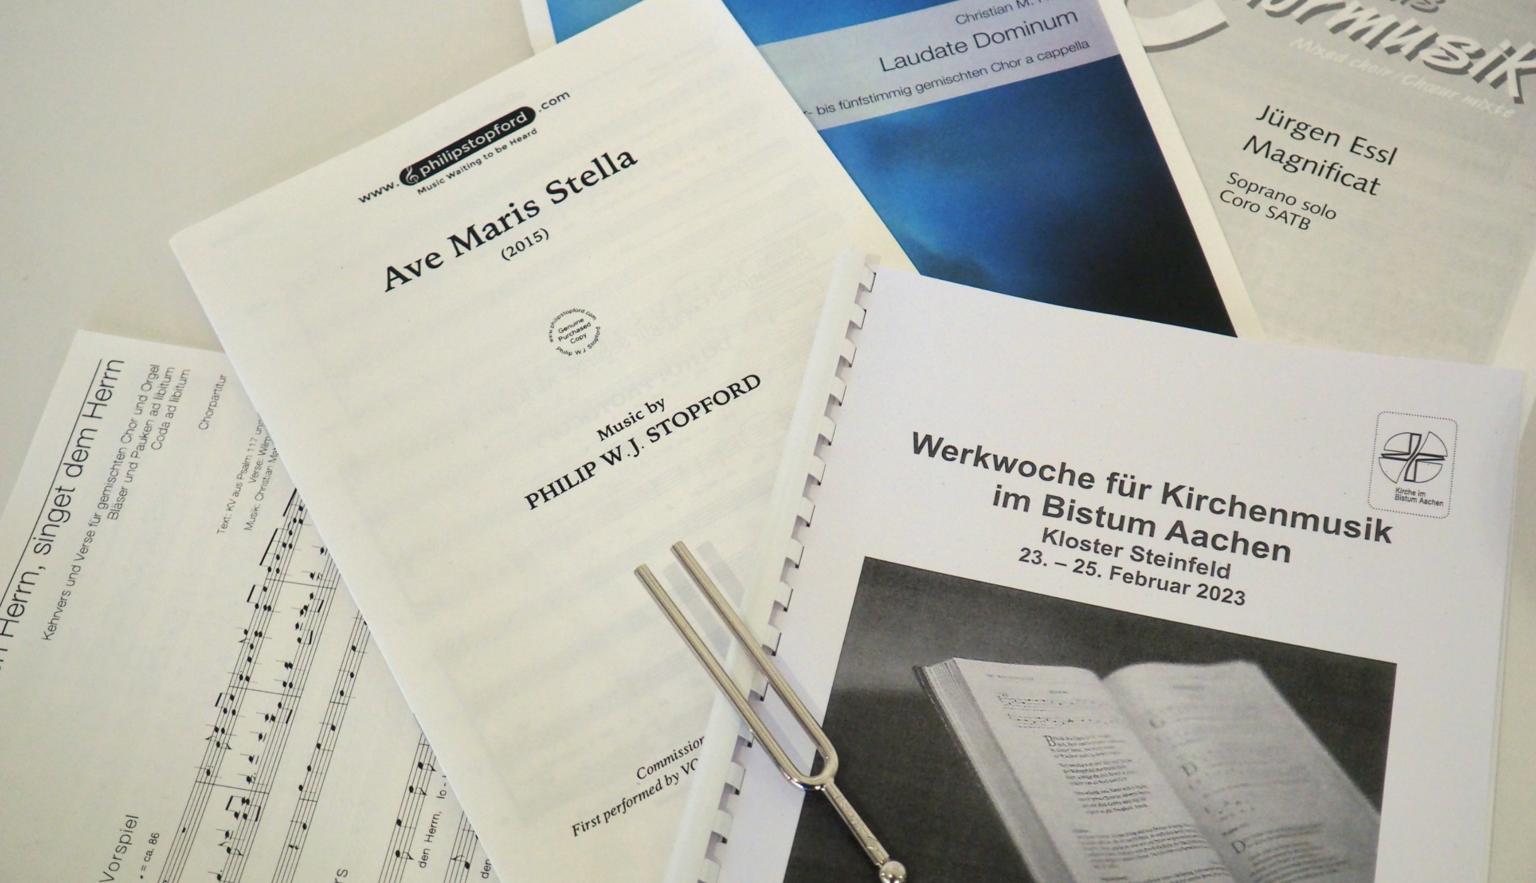 Bericht zur Werkwoche für Kirchenmusik im Bistum Aachen 2023 (c) Andreas Hoffmann